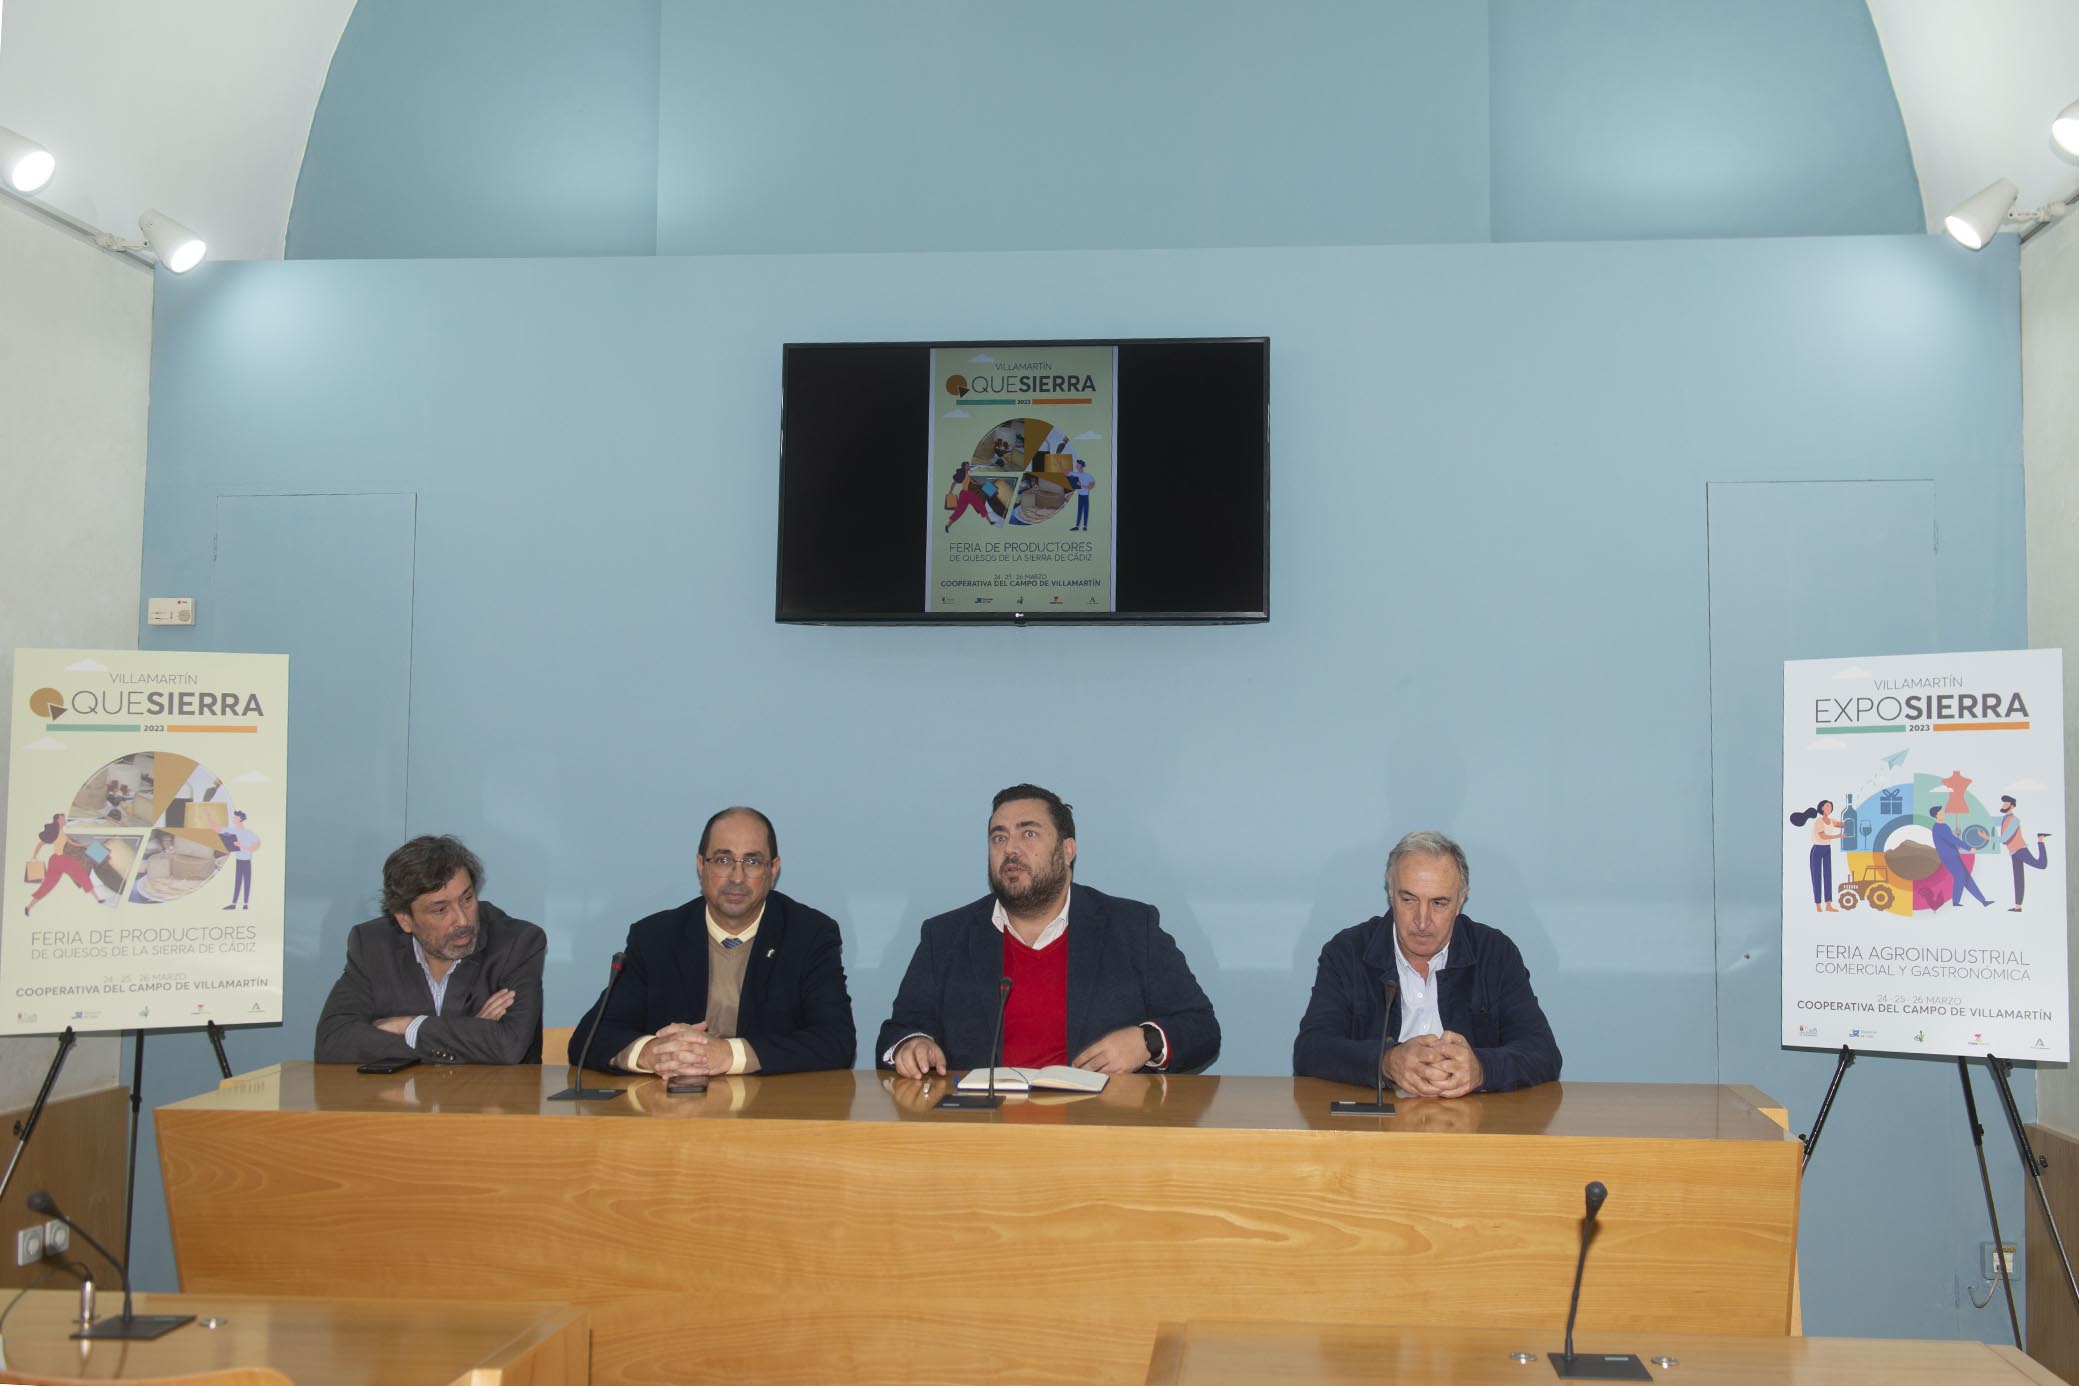 Carlos Landín, Juan Luis Morales, Jaime Armario y Jorge Puerto en la presentación de Exposierra y Quesierra